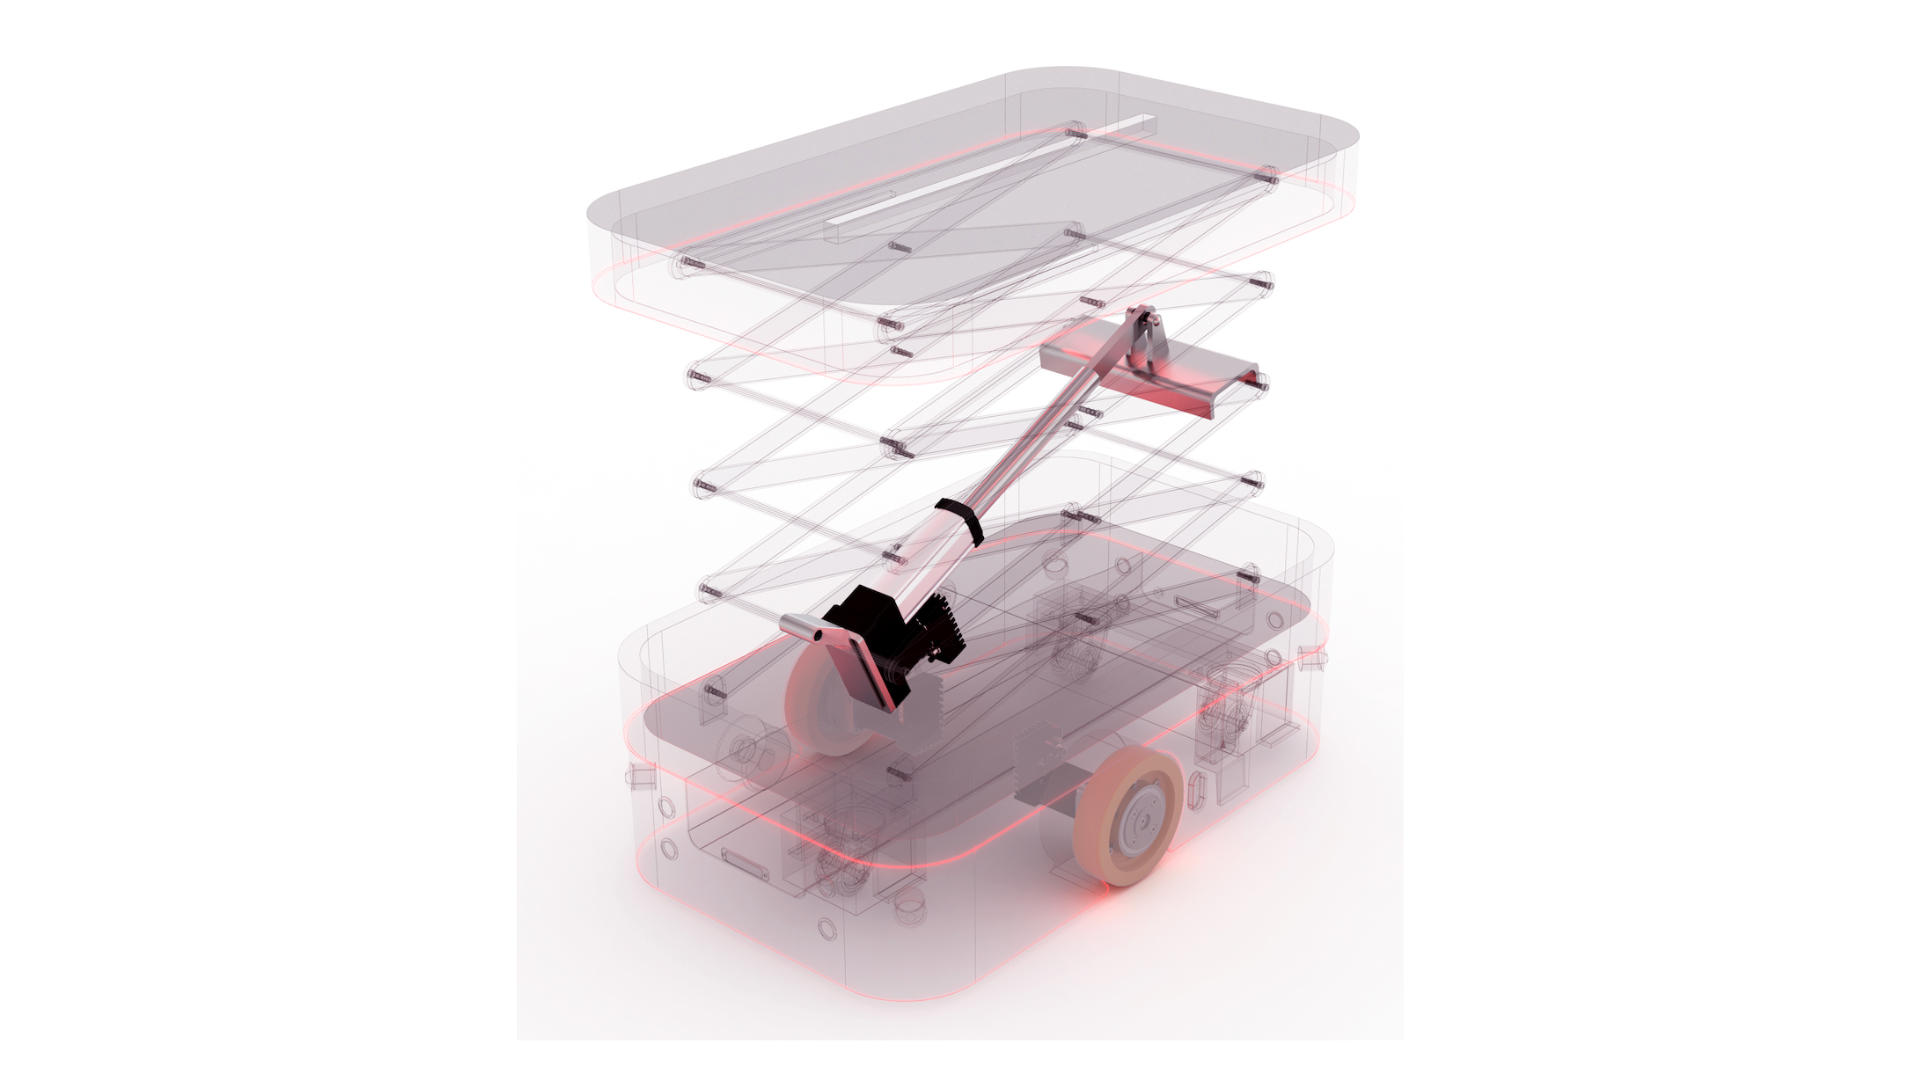 Integrierte Motoren mit Safety für mobile Roboter, FTS und AMR